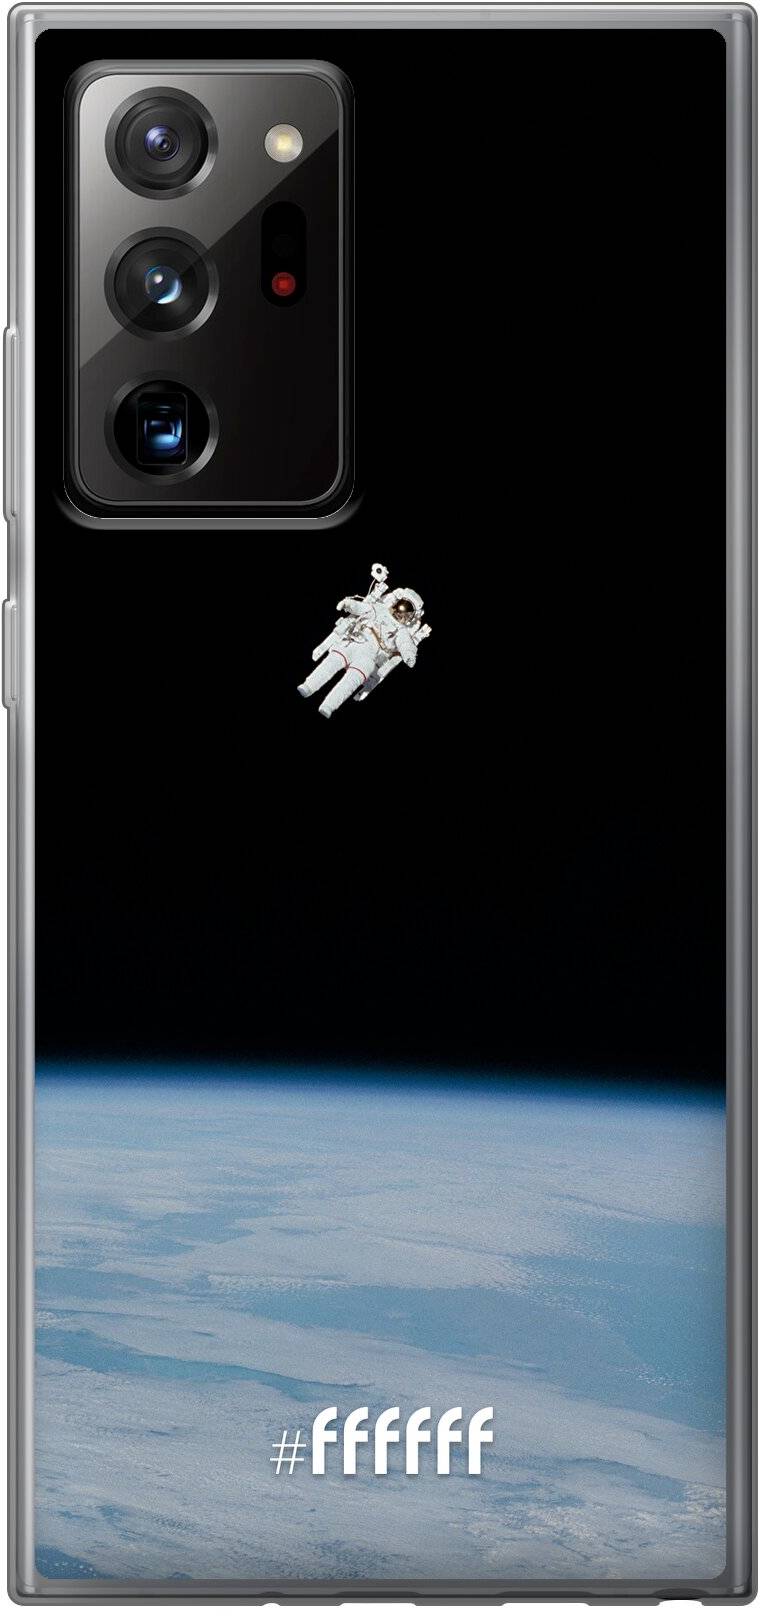 Spacewalk Galaxy Note 20 Ultra